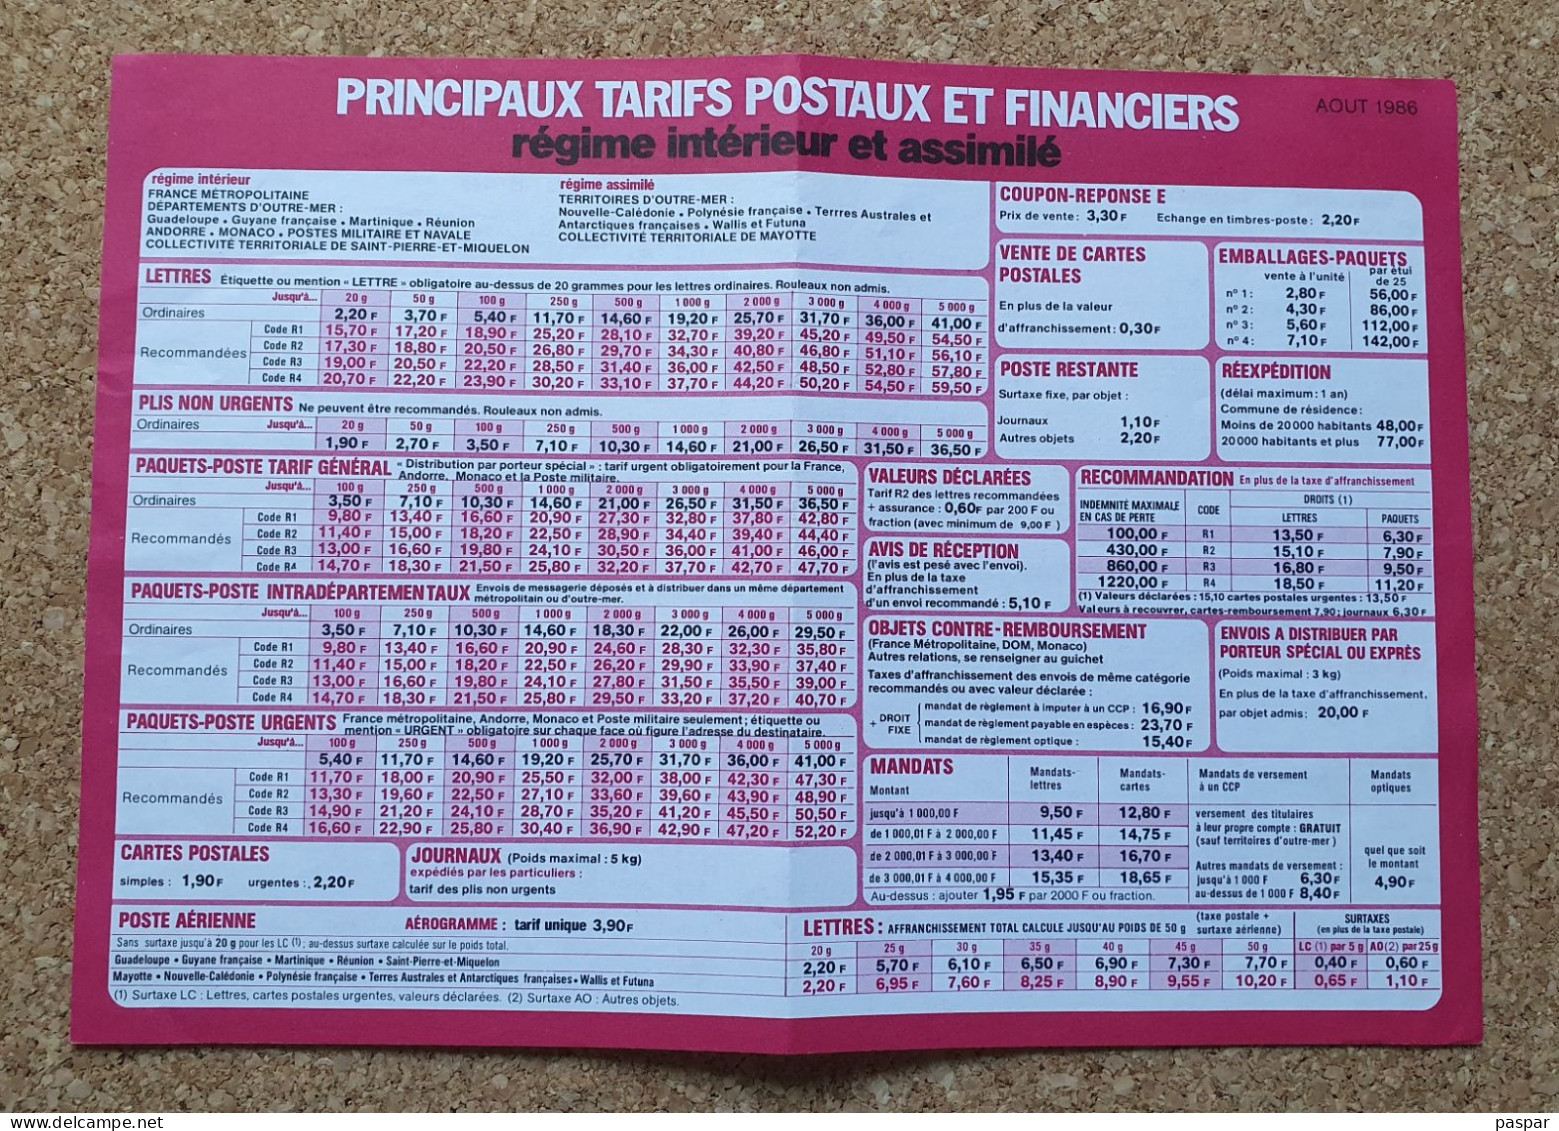 Principaux Tarifs Postaux Et Financiers La Poste Août 1986 - Documents Of Postal Services